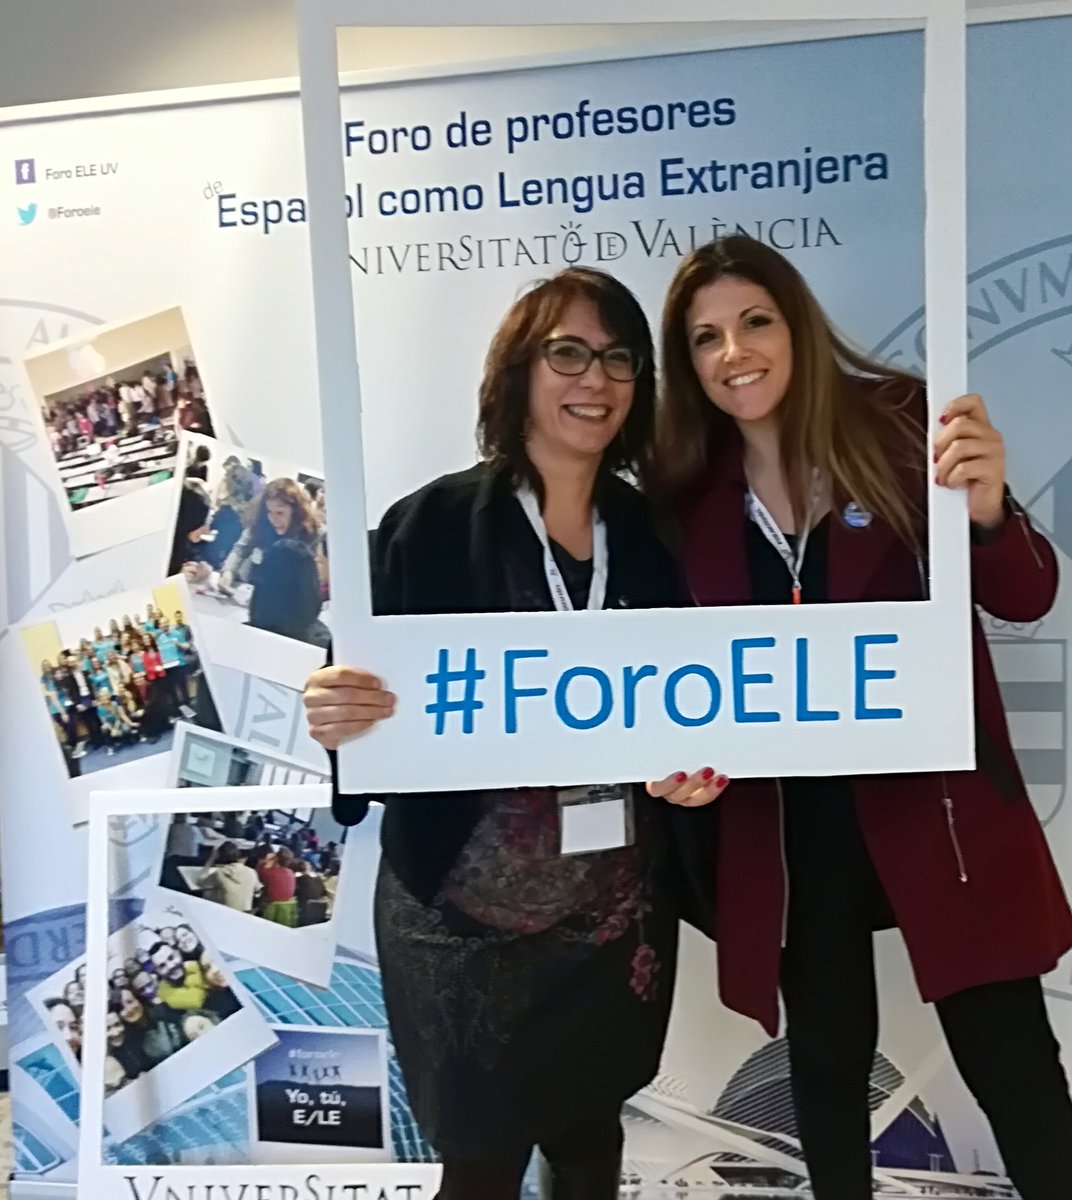 Una gran jornada compartiendo experiencias y talleres @Isabel_GE @Foroele
#UniversidaddeValencia #URV ##profesoresdeELE
Taller #noshacemosunselfie?